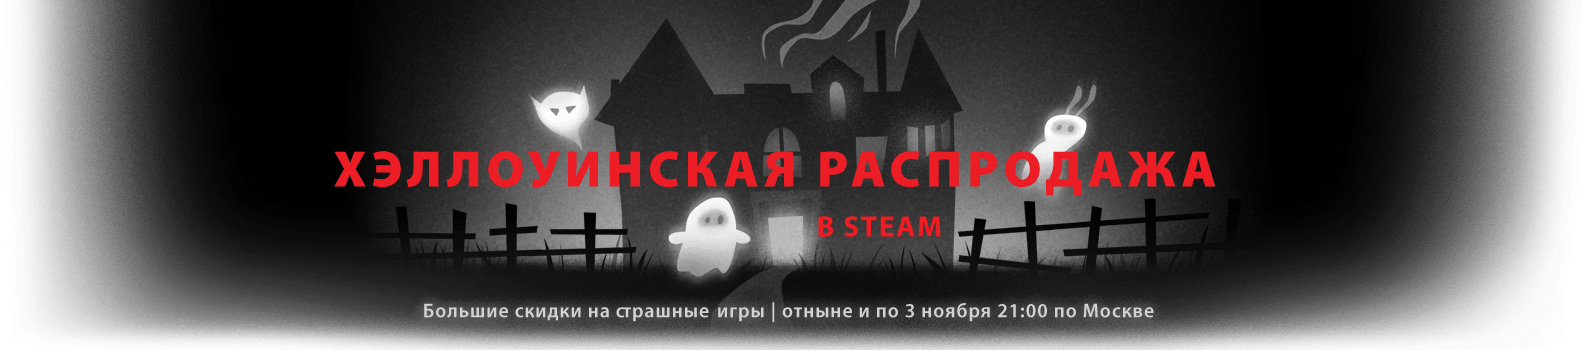 Хэллоуинская распродажа Steam 2014